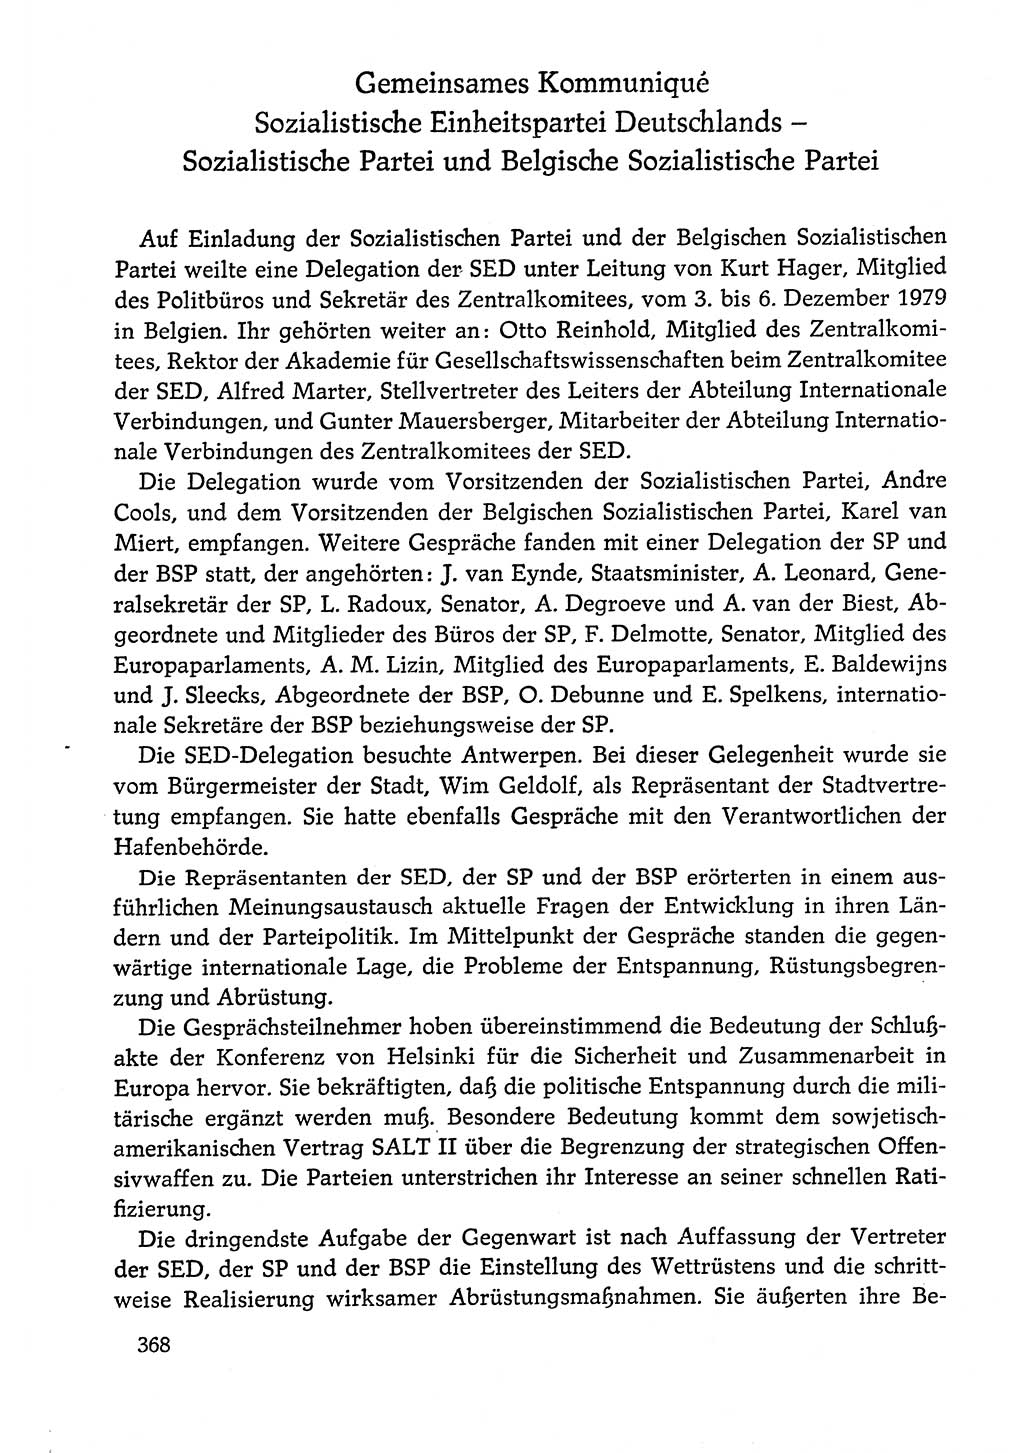 Dokumente der Sozialistischen Einheitspartei Deutschlands (SED) [Deutsche Demokratische Republik (DDR)] 1978-1979, Seite 368 (Dok. SED DDR 1978-1979, S. 368)